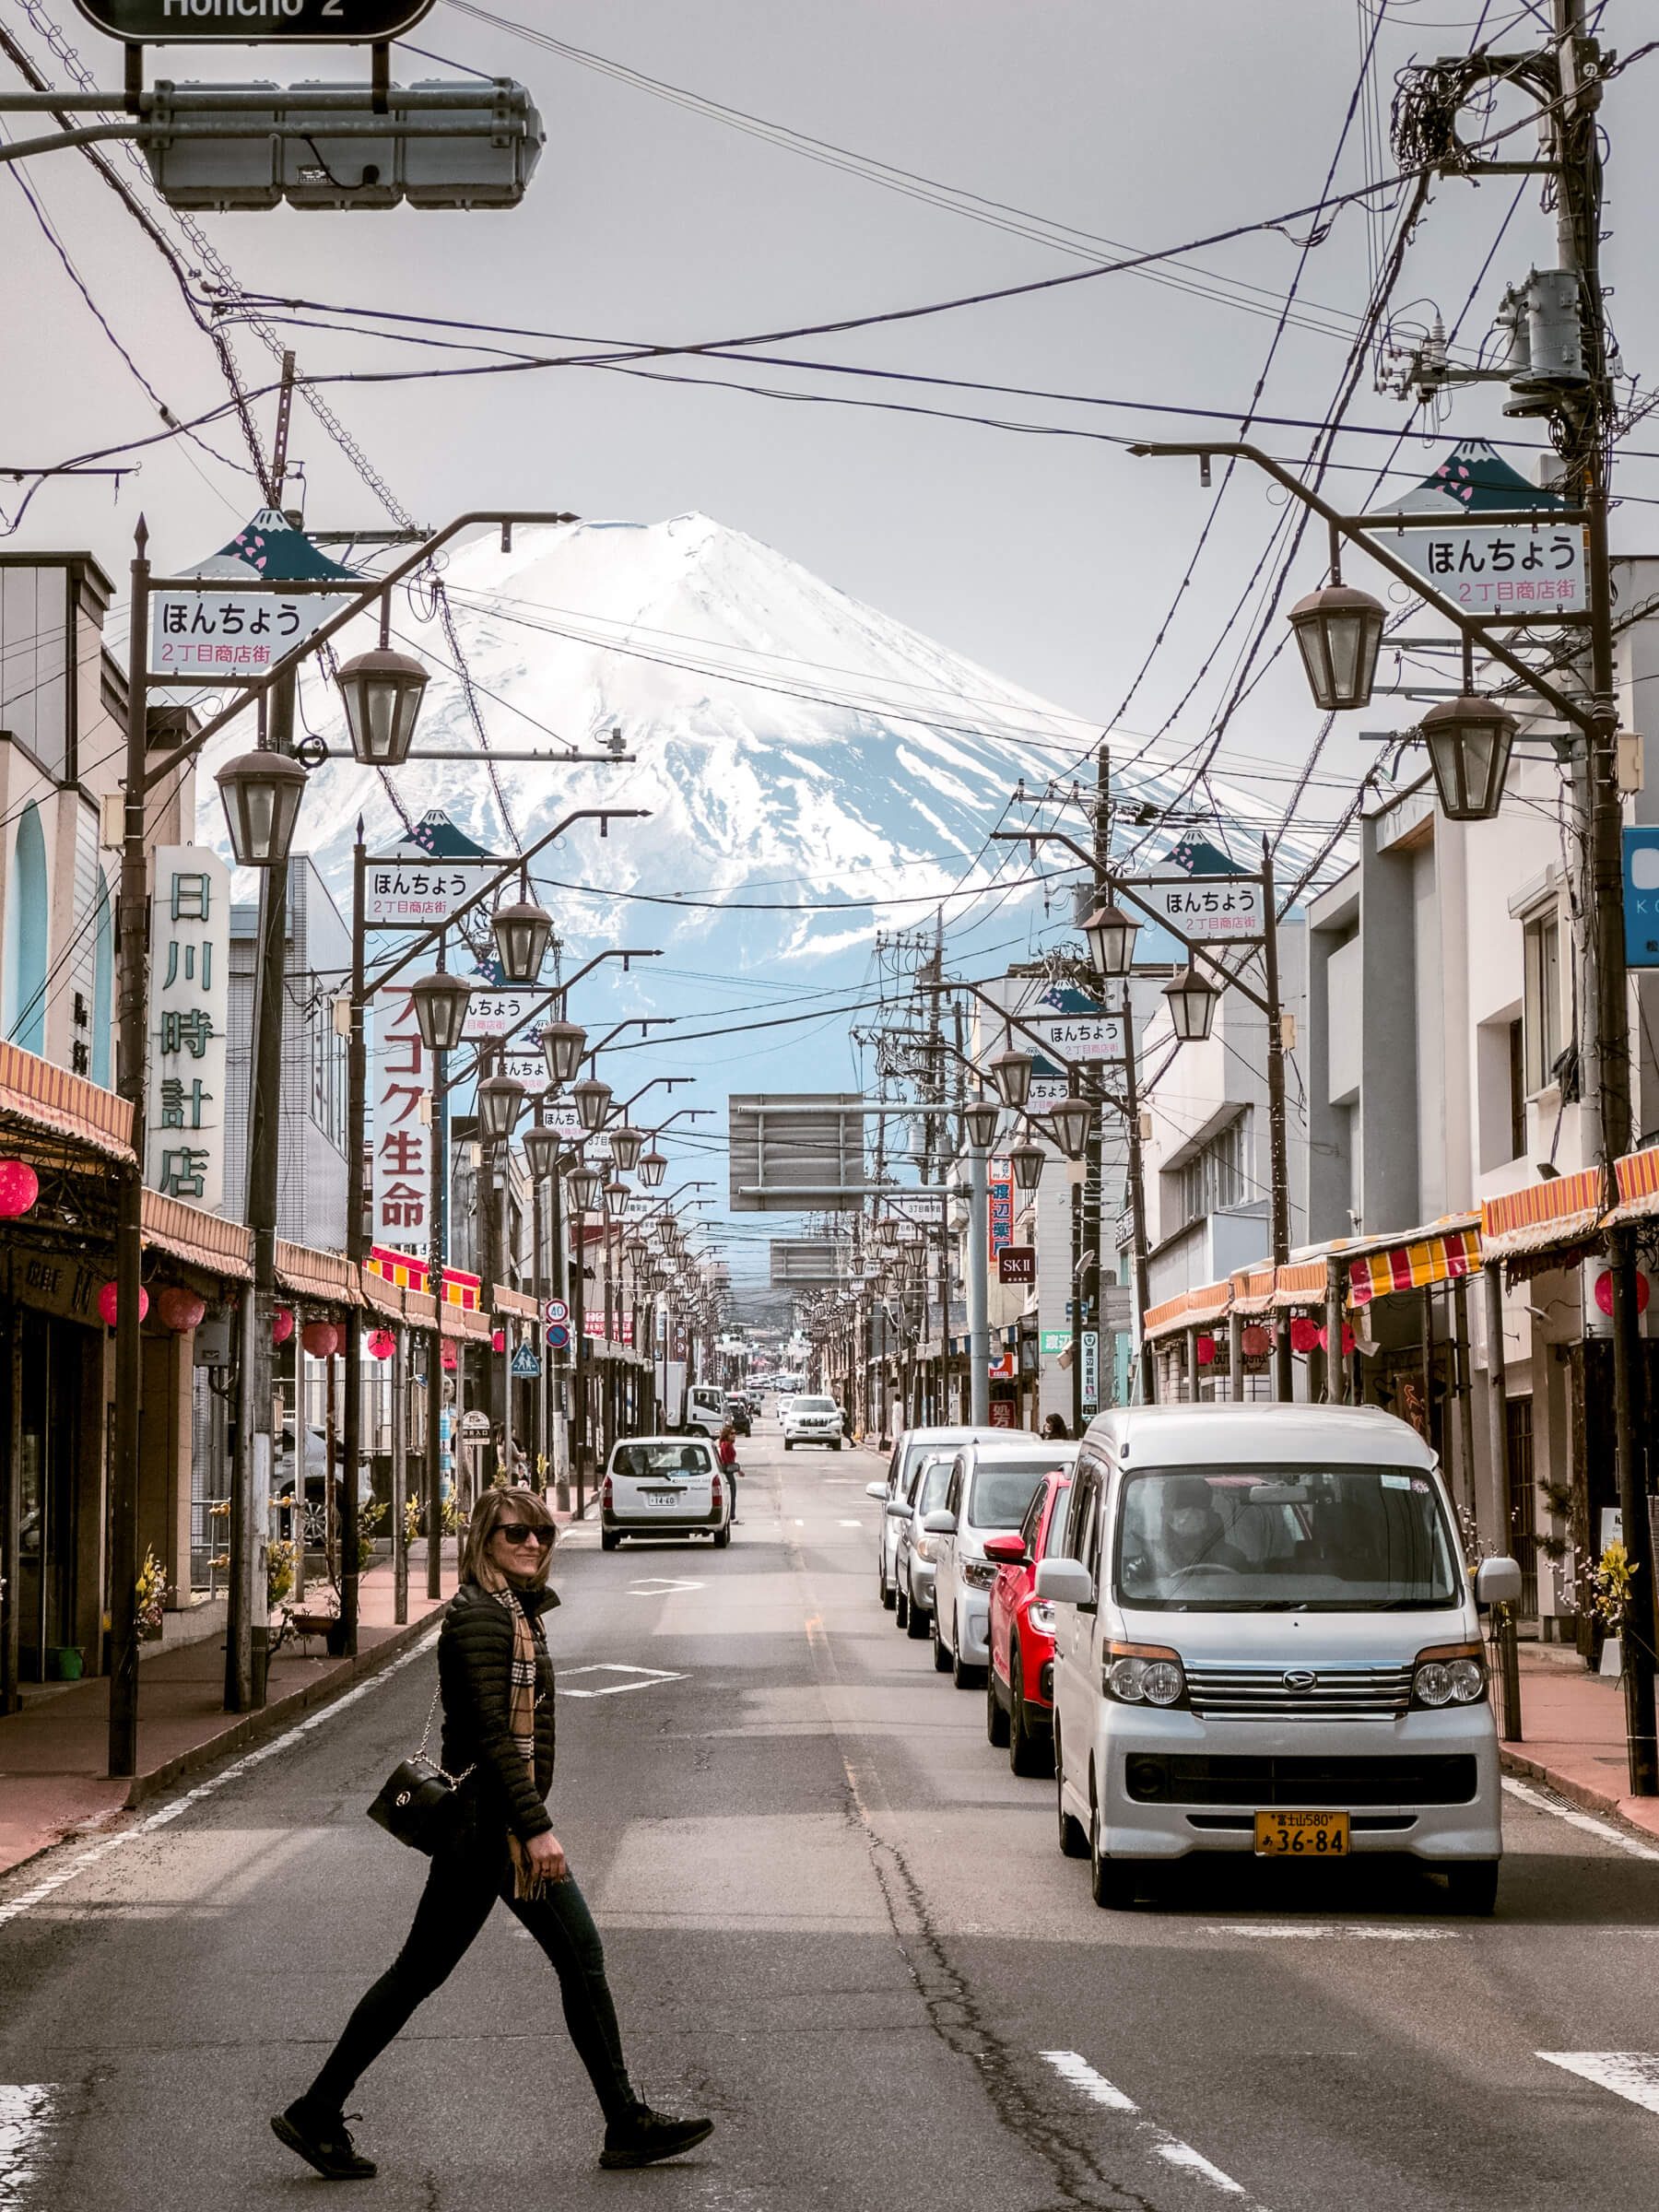 Kawaguchiko Mount Fuji Street View